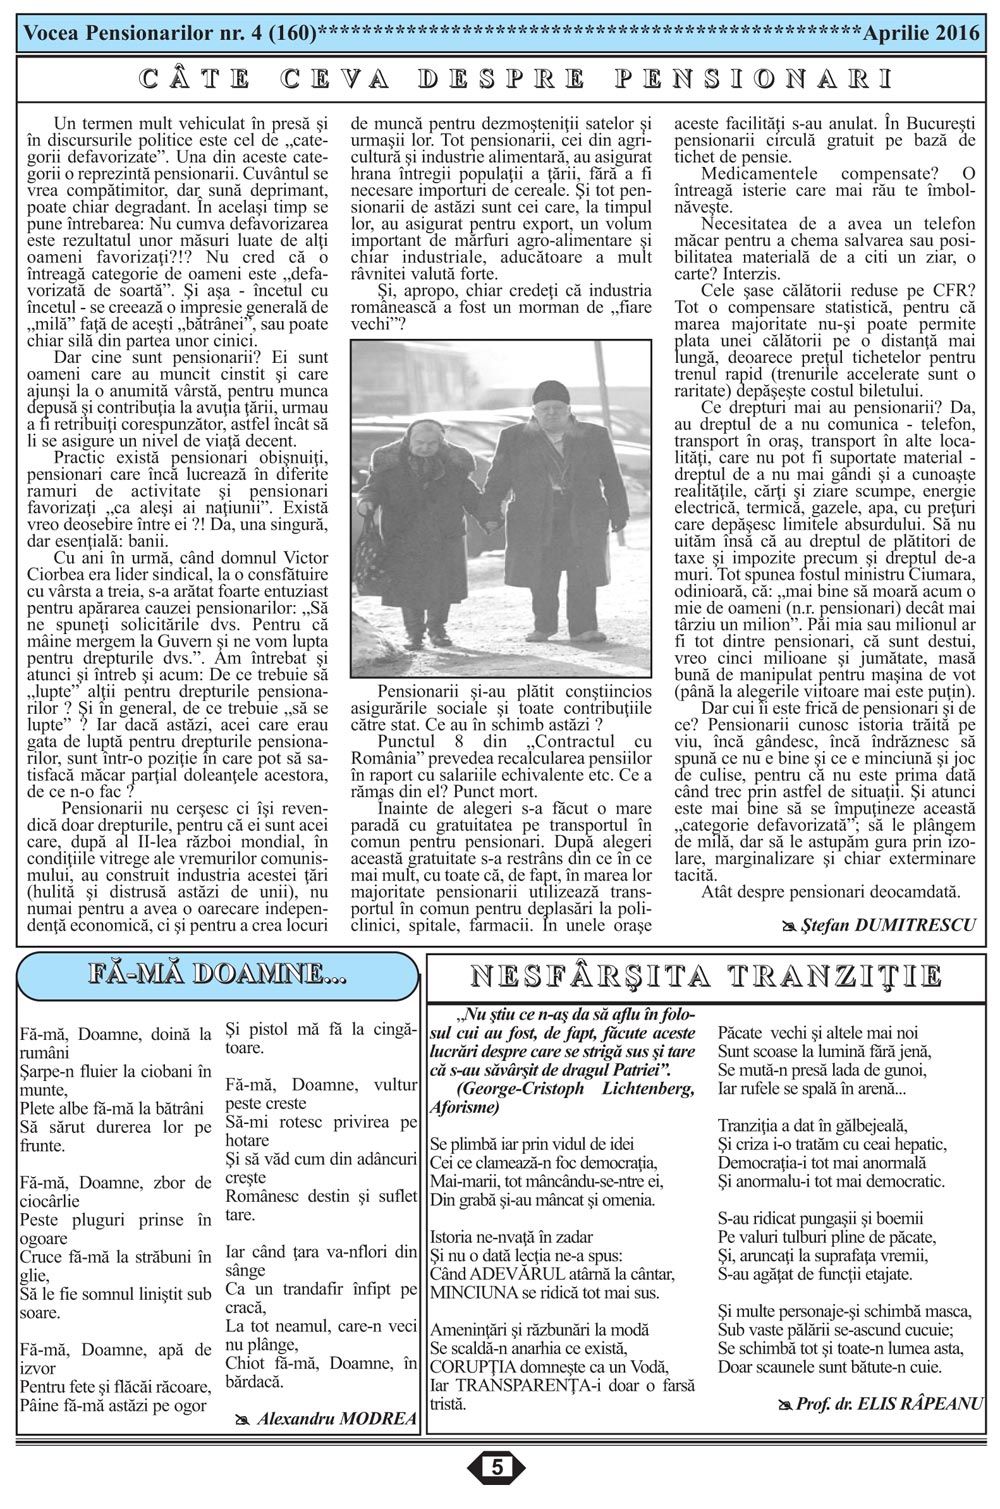 Ziarul Vocea Pensionarilor luna aprilie 2016